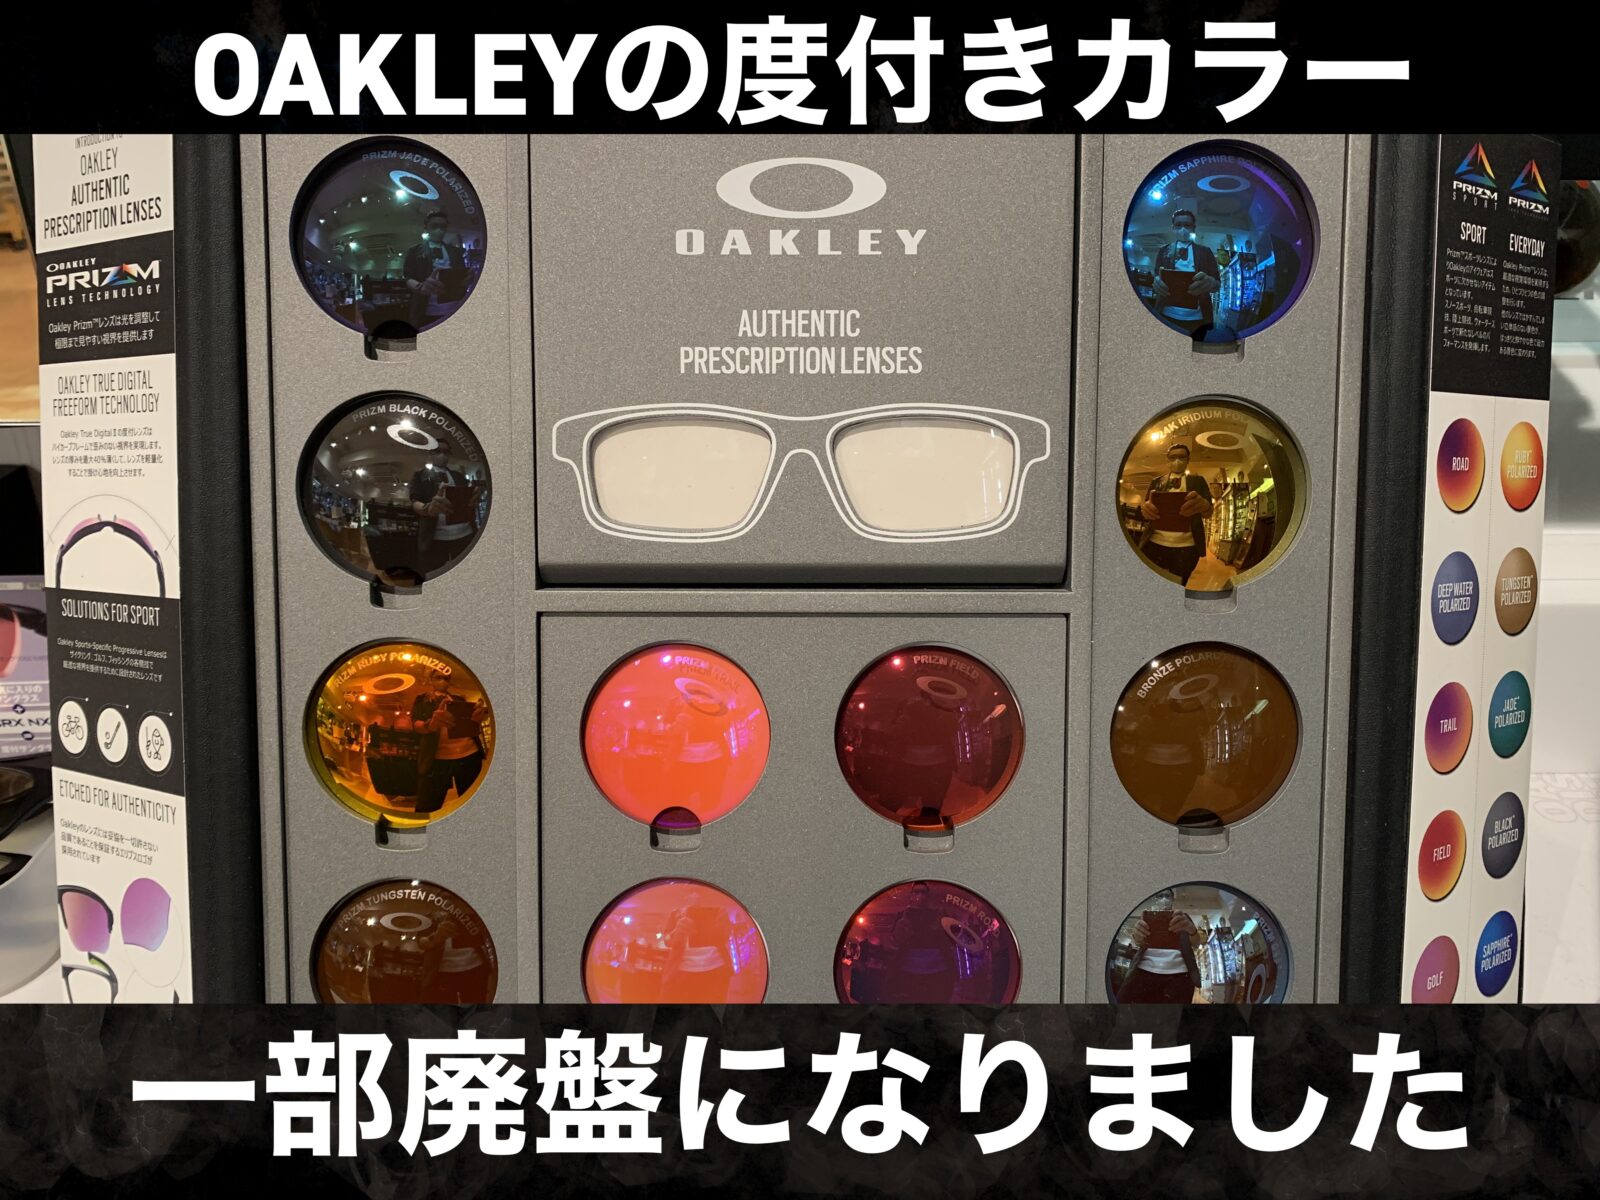 OAKLEYの度付きカラーが9月より変更されました – 名古屋栄のスポーツ